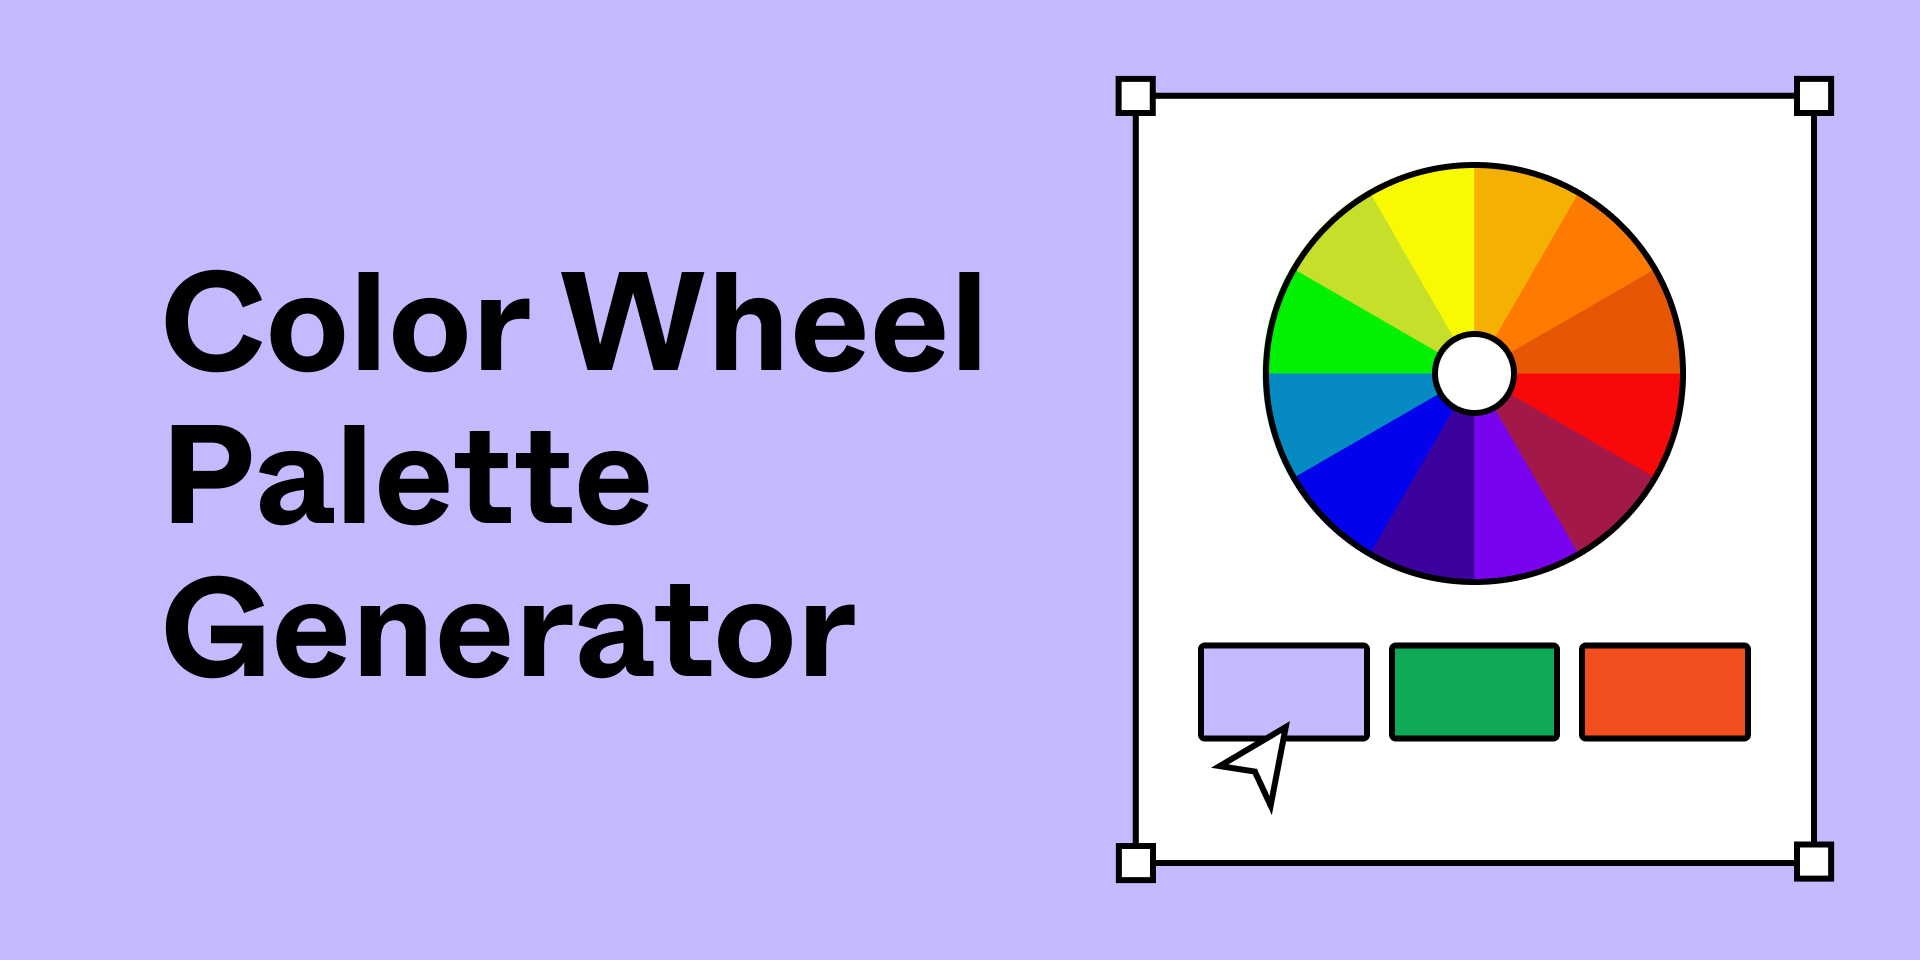 установить плагин для Фигмы Color wheel palette generator